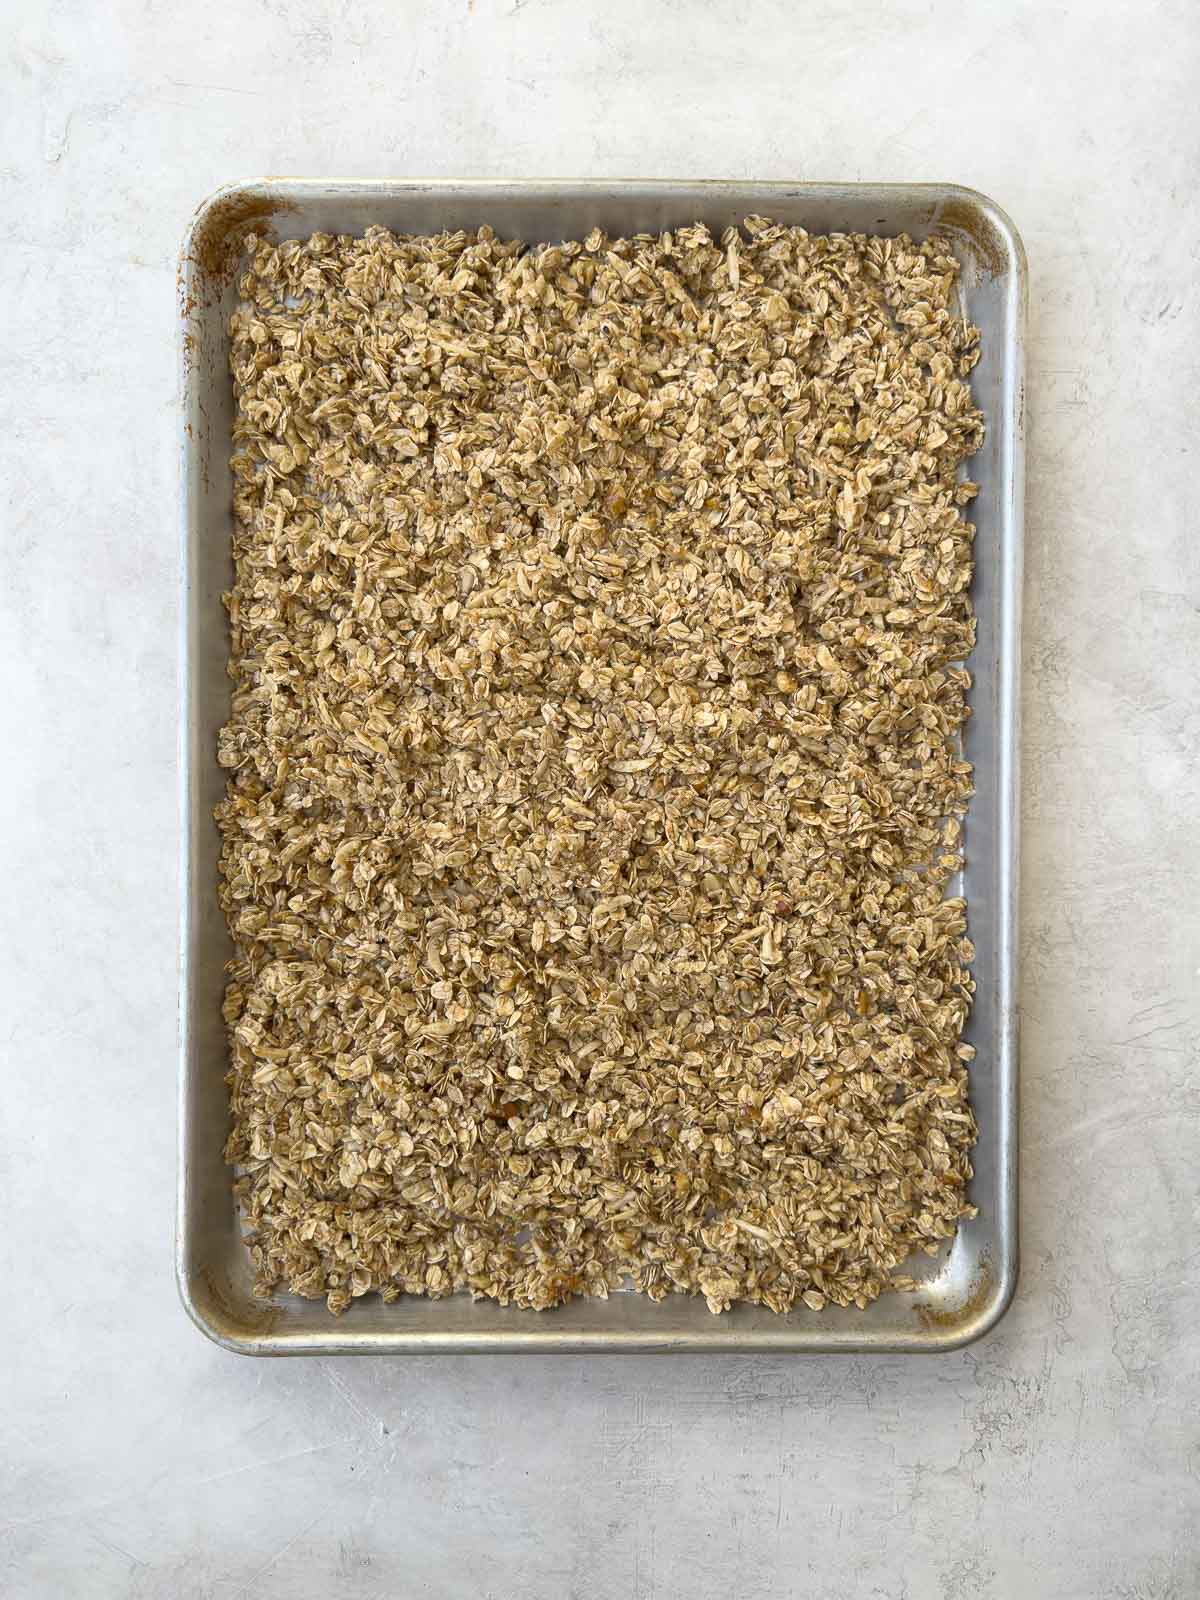 Spreading granola mixture onto a baking sheet for baking.